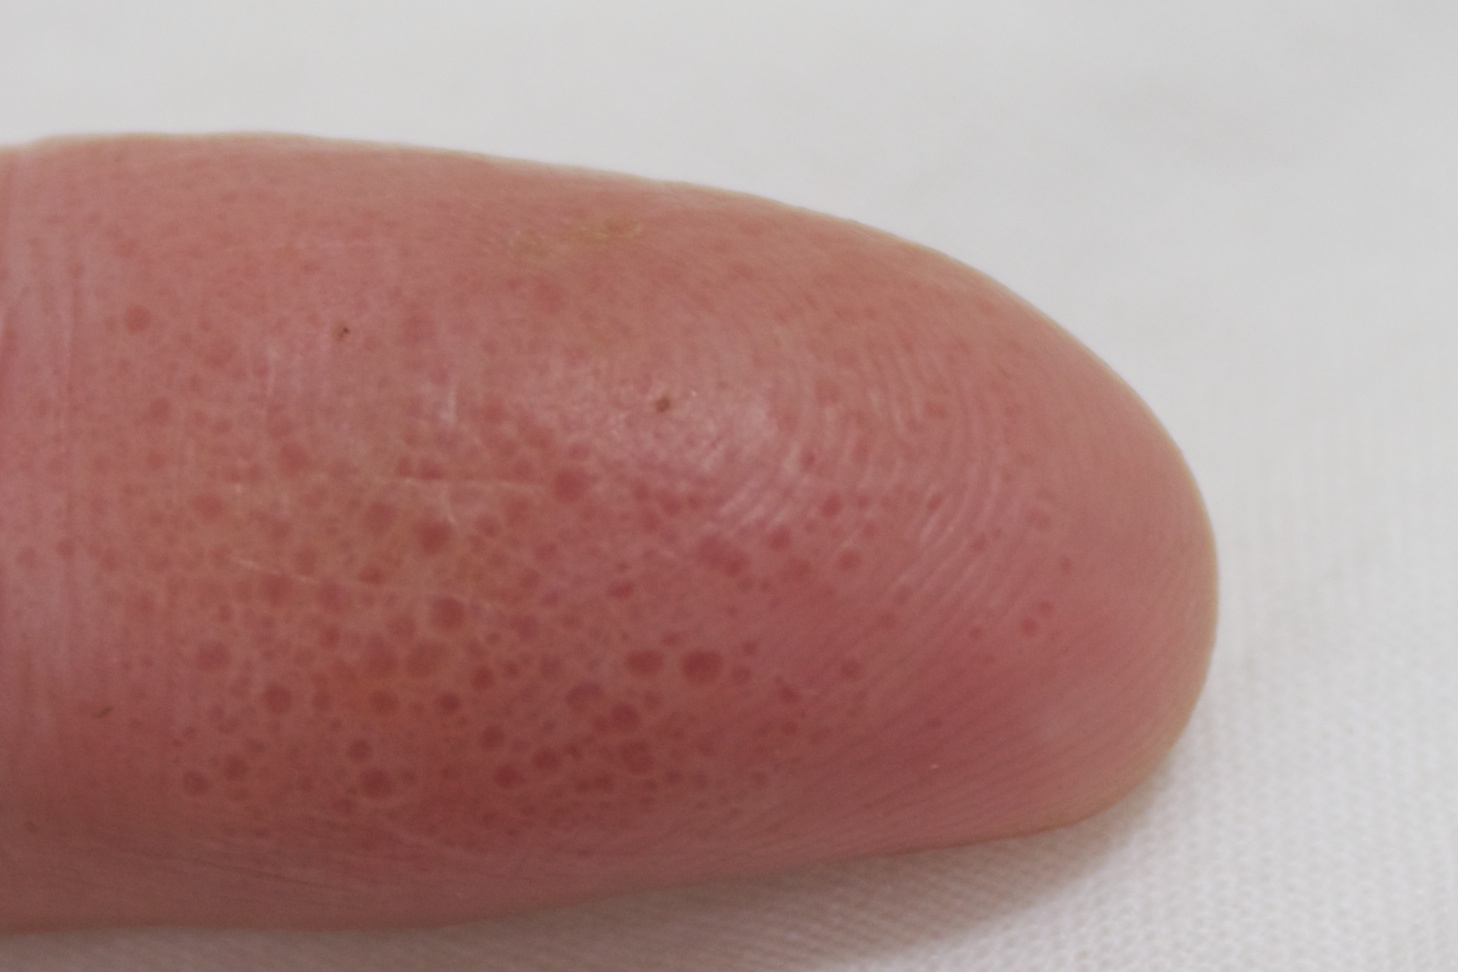 Eczema On Fingertips